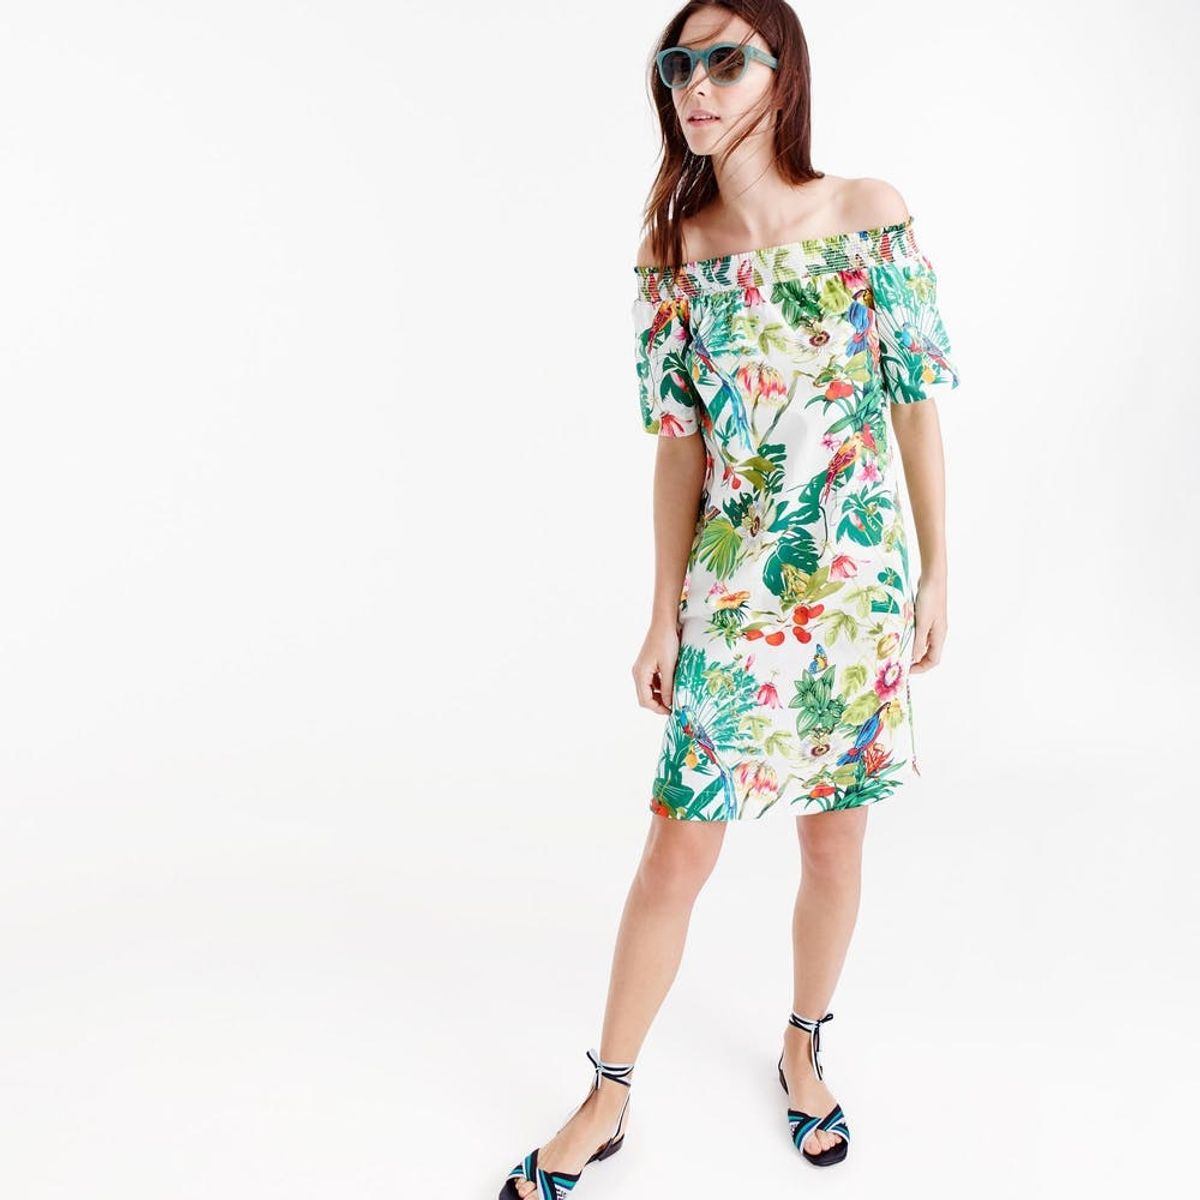 19 Off-the-Shoulder Dresses That Make Summer Dressing a Breeze